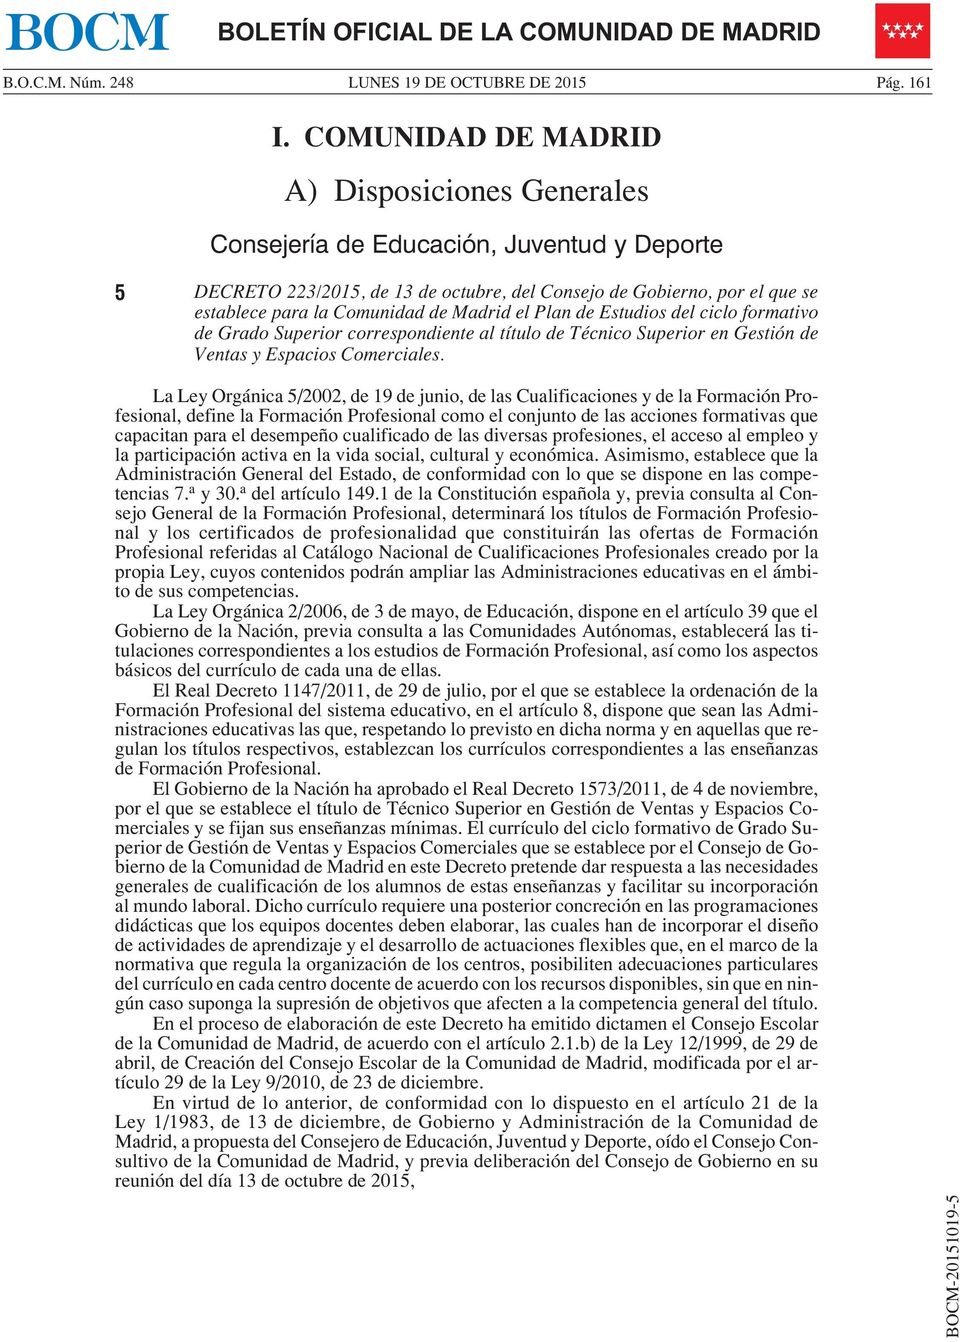 Madrid el Plan de Estudios del ciclo formativo de Grado Superior correspondiente al título de Técnico Superior en Gestión de Ventas y Espacios Comerciales.